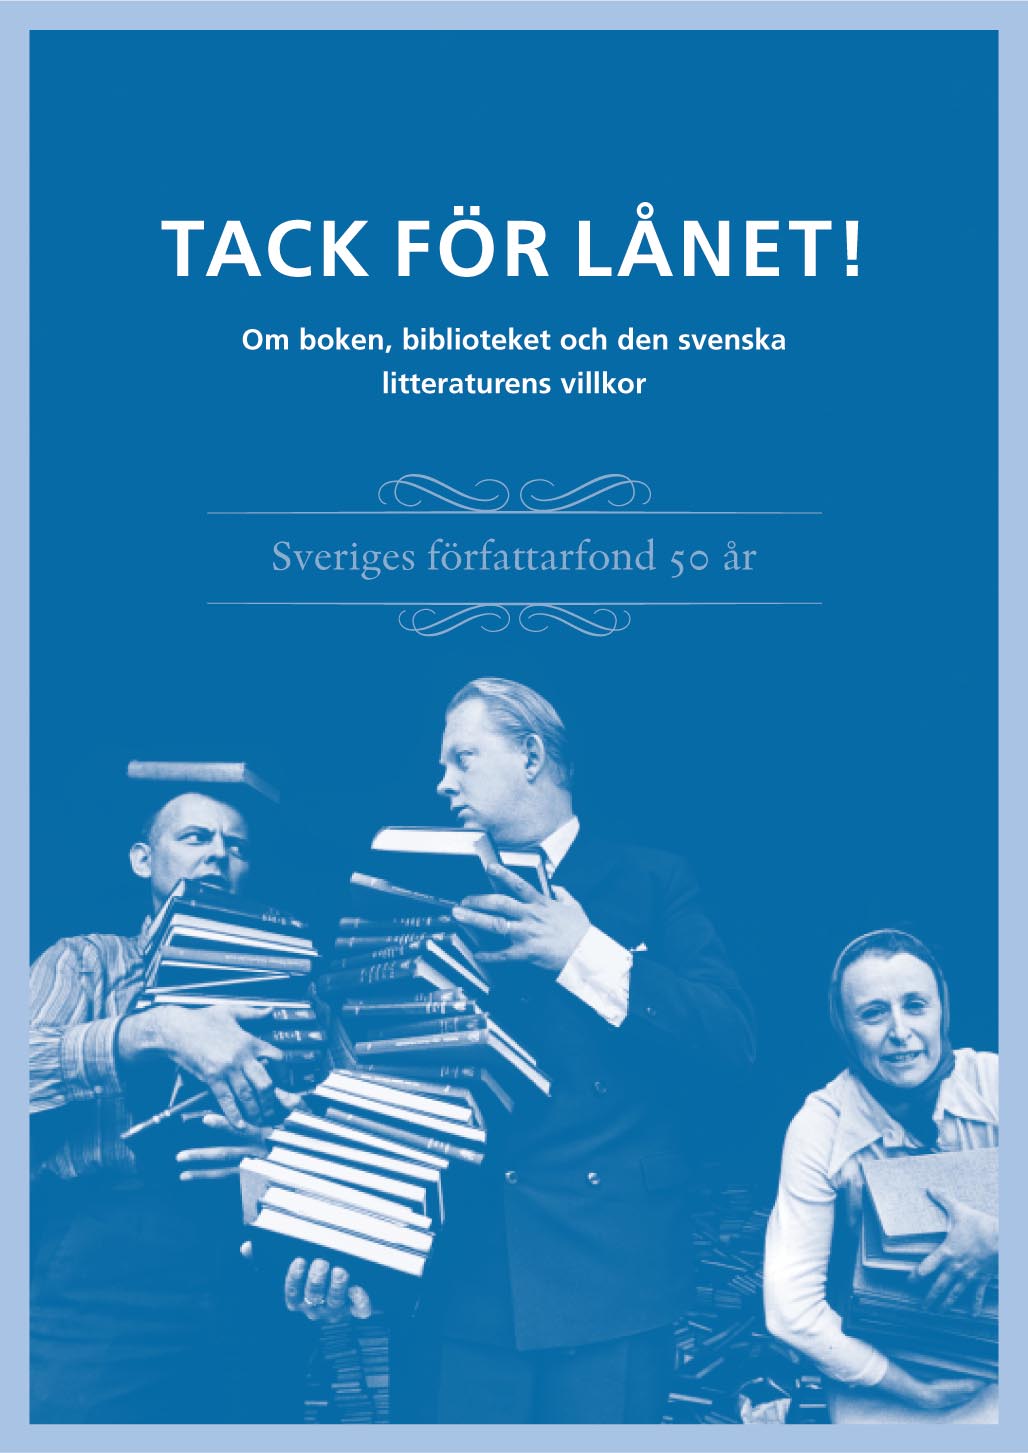   Tack för lånet, Sveriges författarfond, 2004,  ISBN 91-7843-196-4   